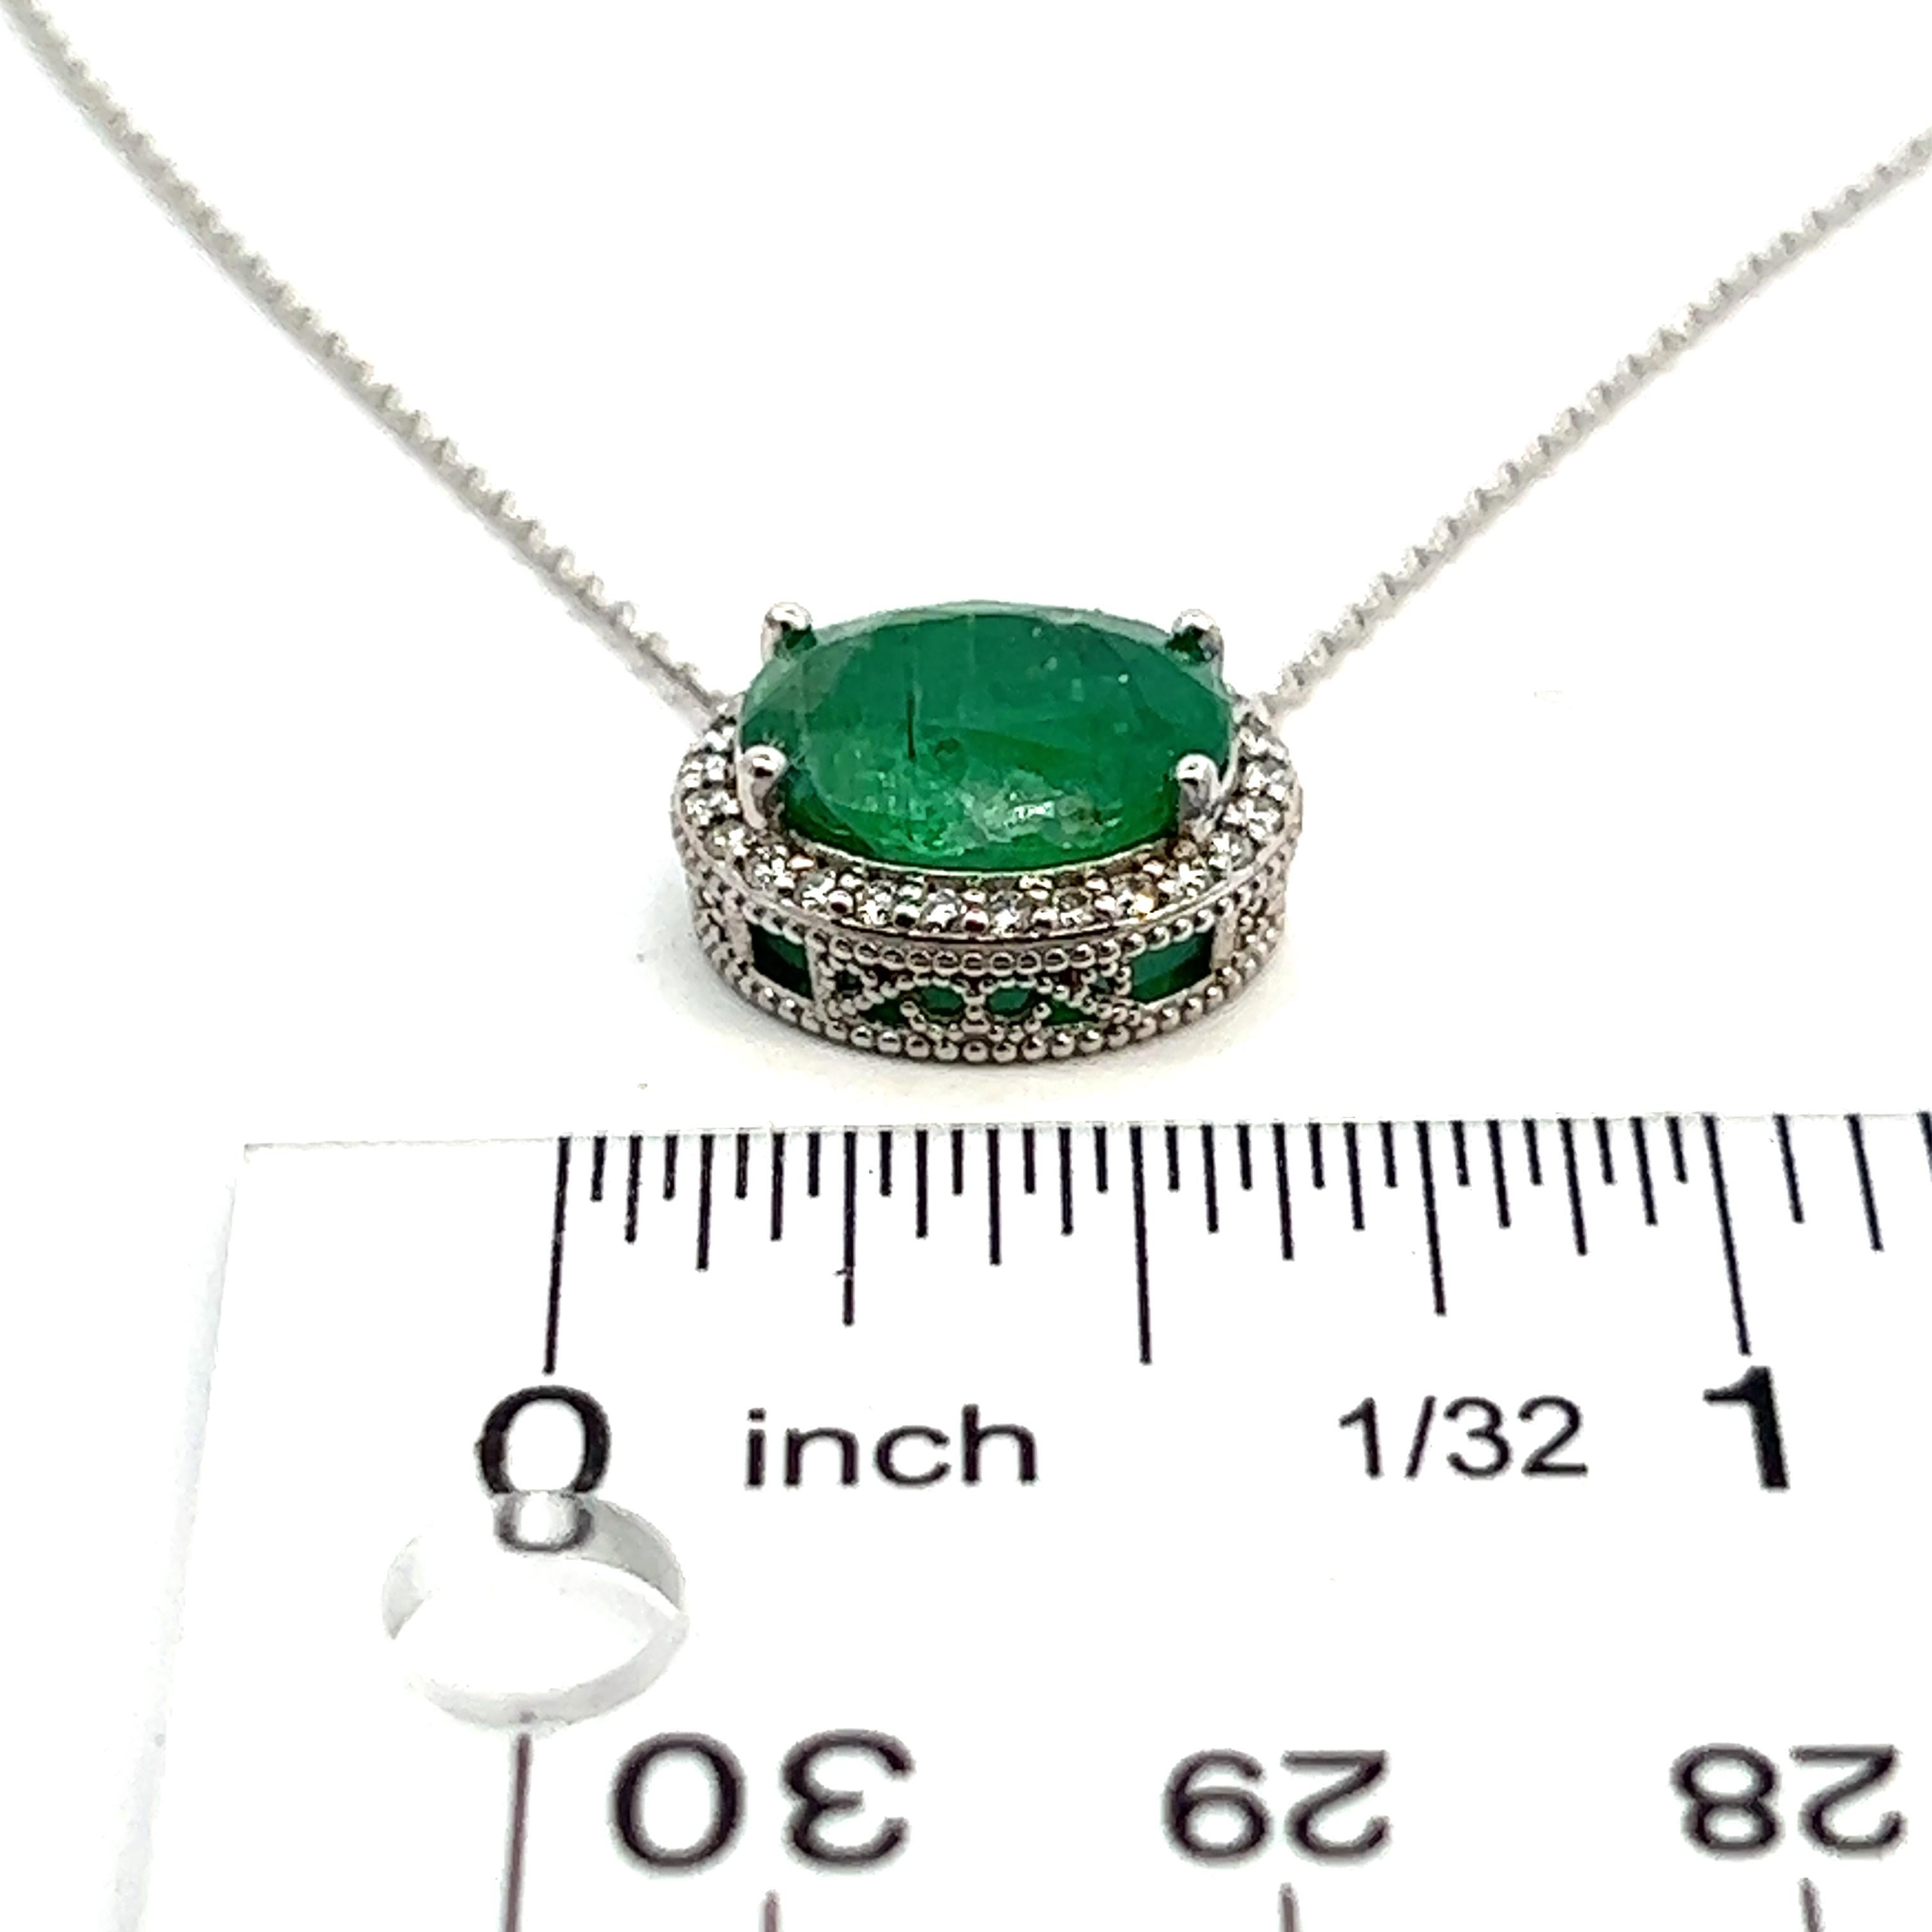 Oval Cut Natural Emerald Diamond Pendant Necklace 15